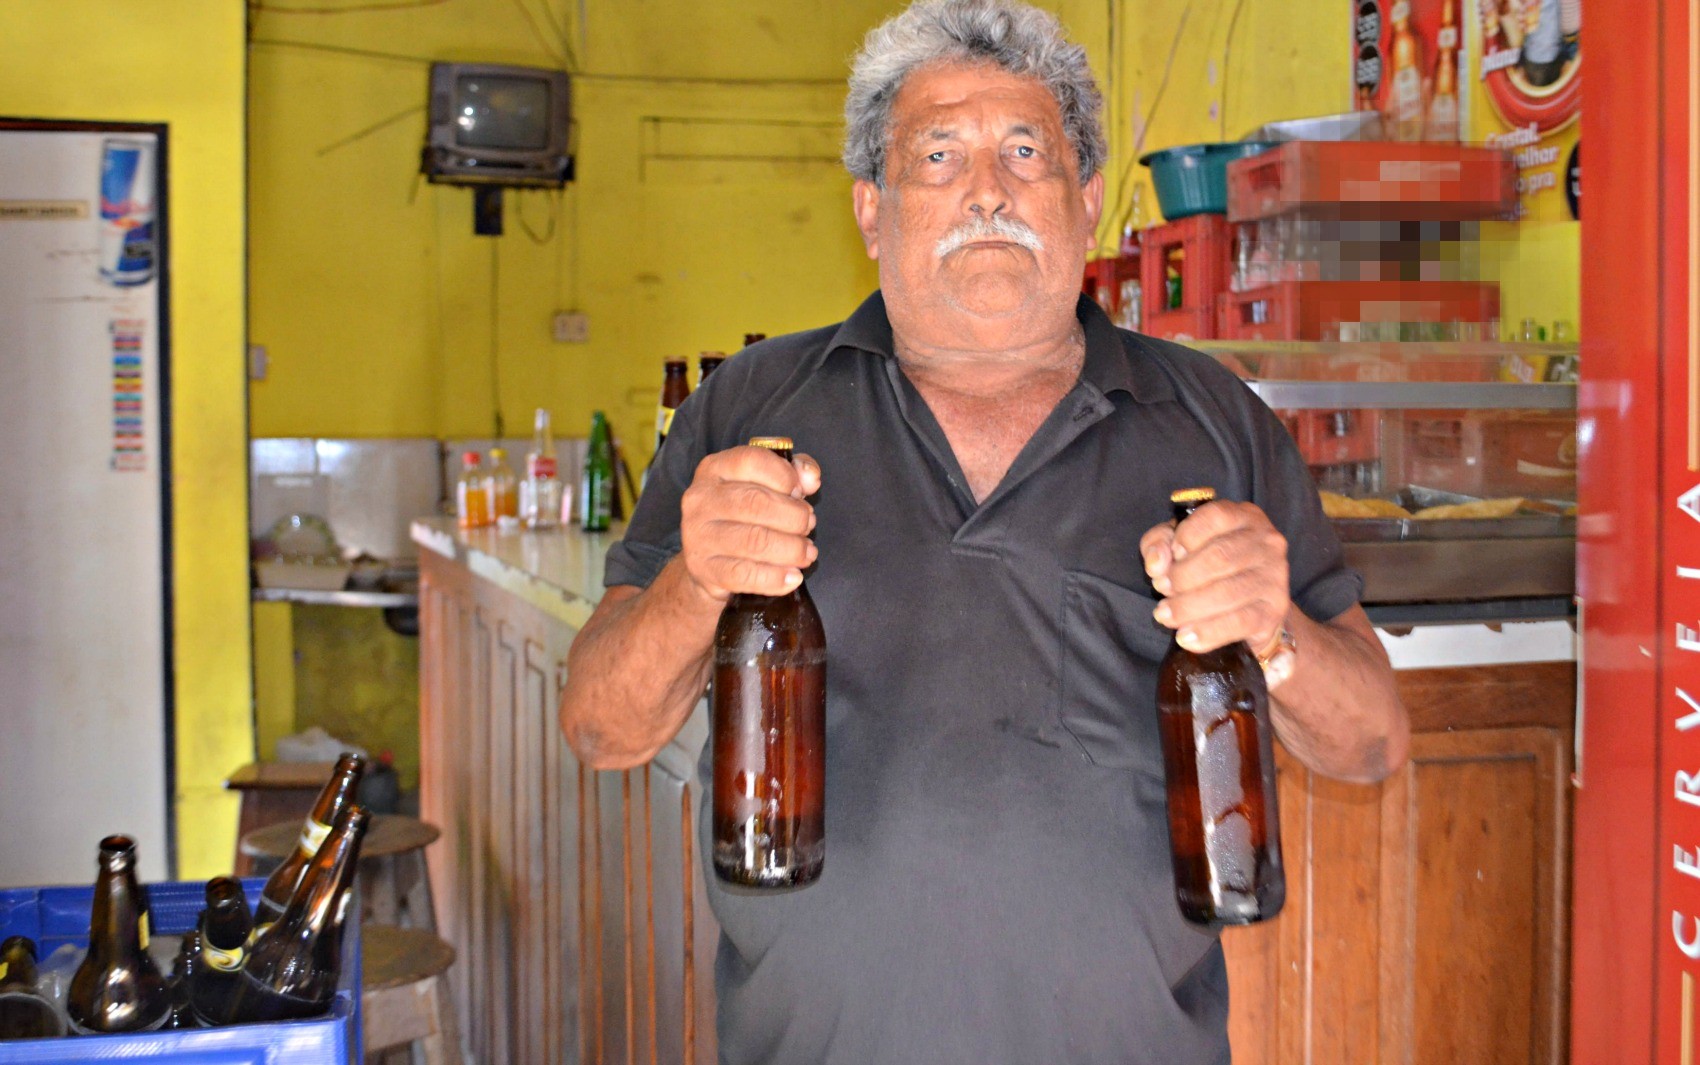 Cabeleira, dono de bar conhecido pelo mau humor, morre aos 87 anos em Rio Branco 